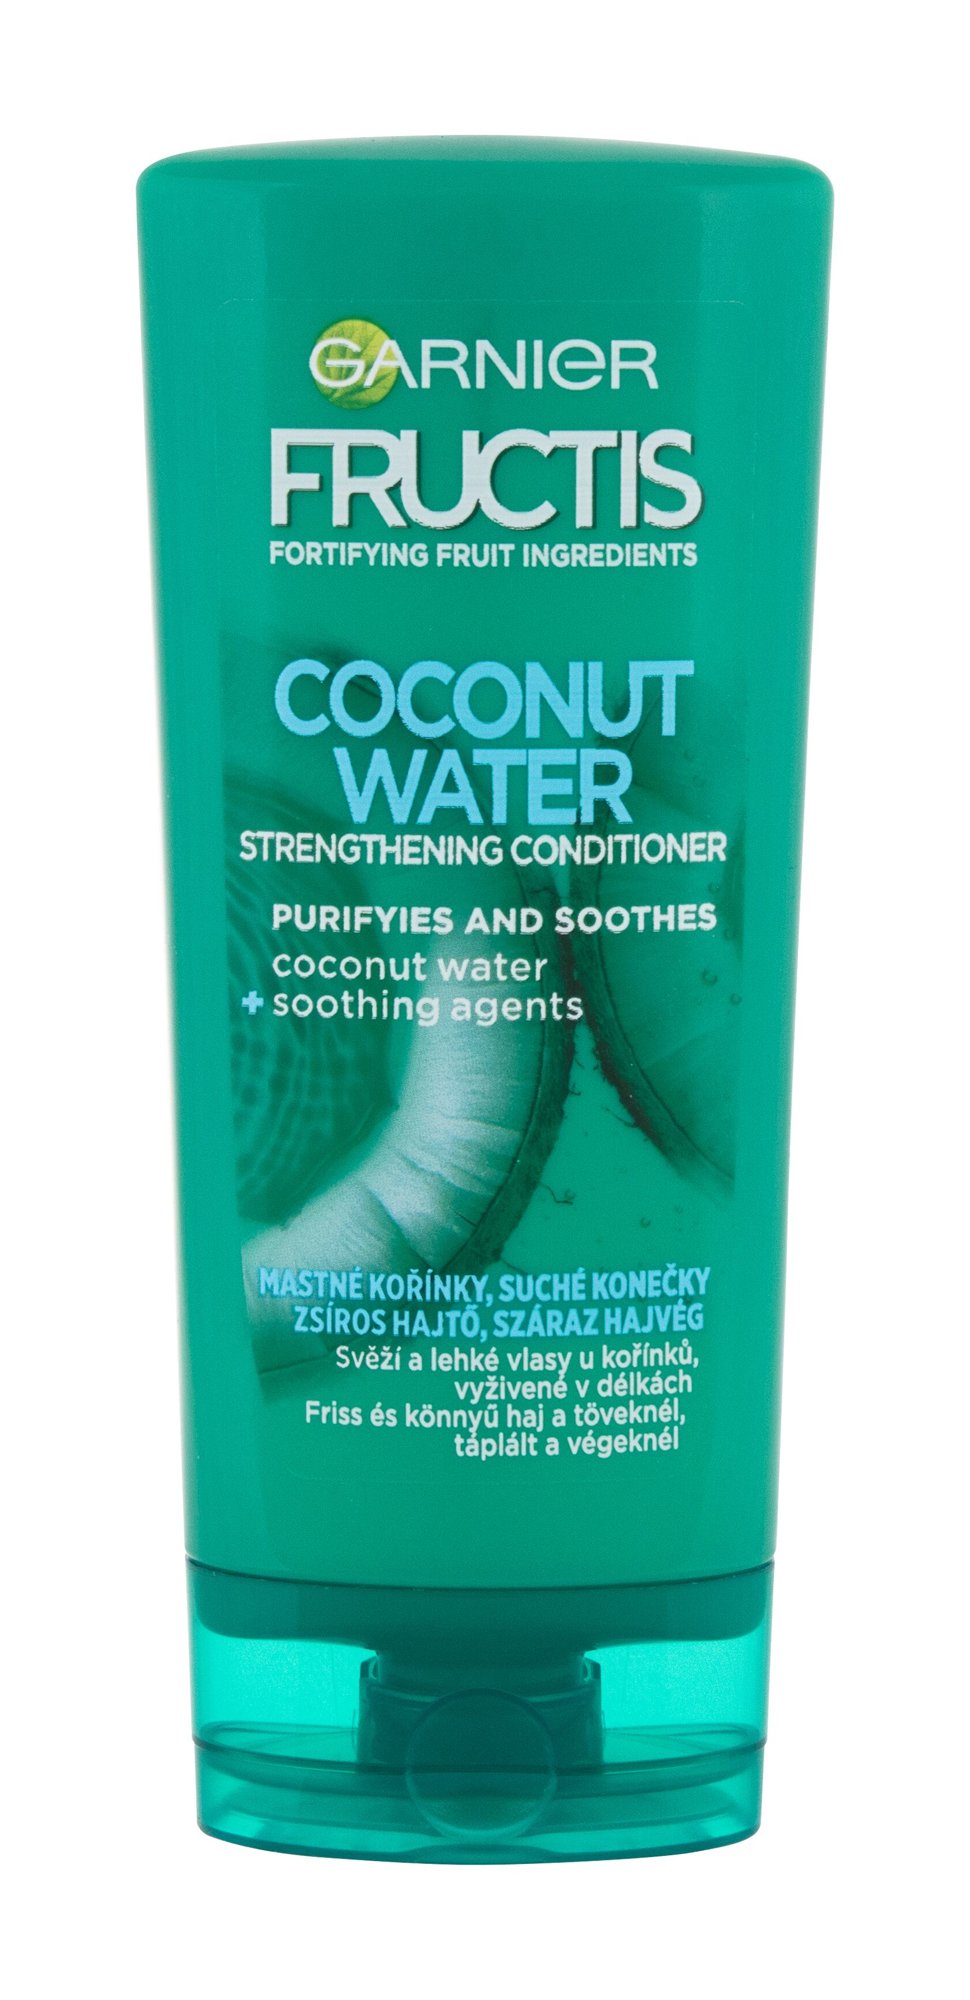 Garnier Fructis Coconut Water kondicionierius